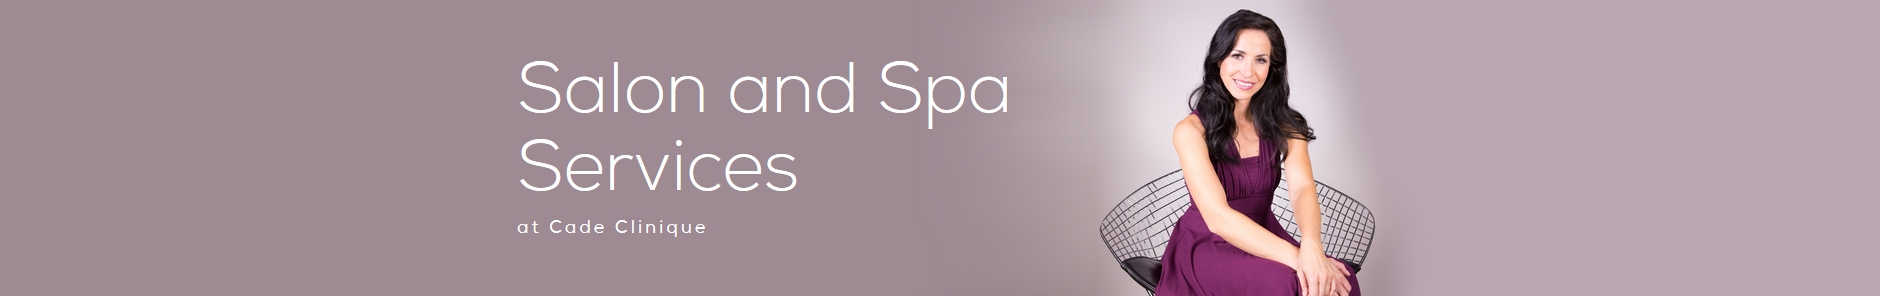 salon-spa-services